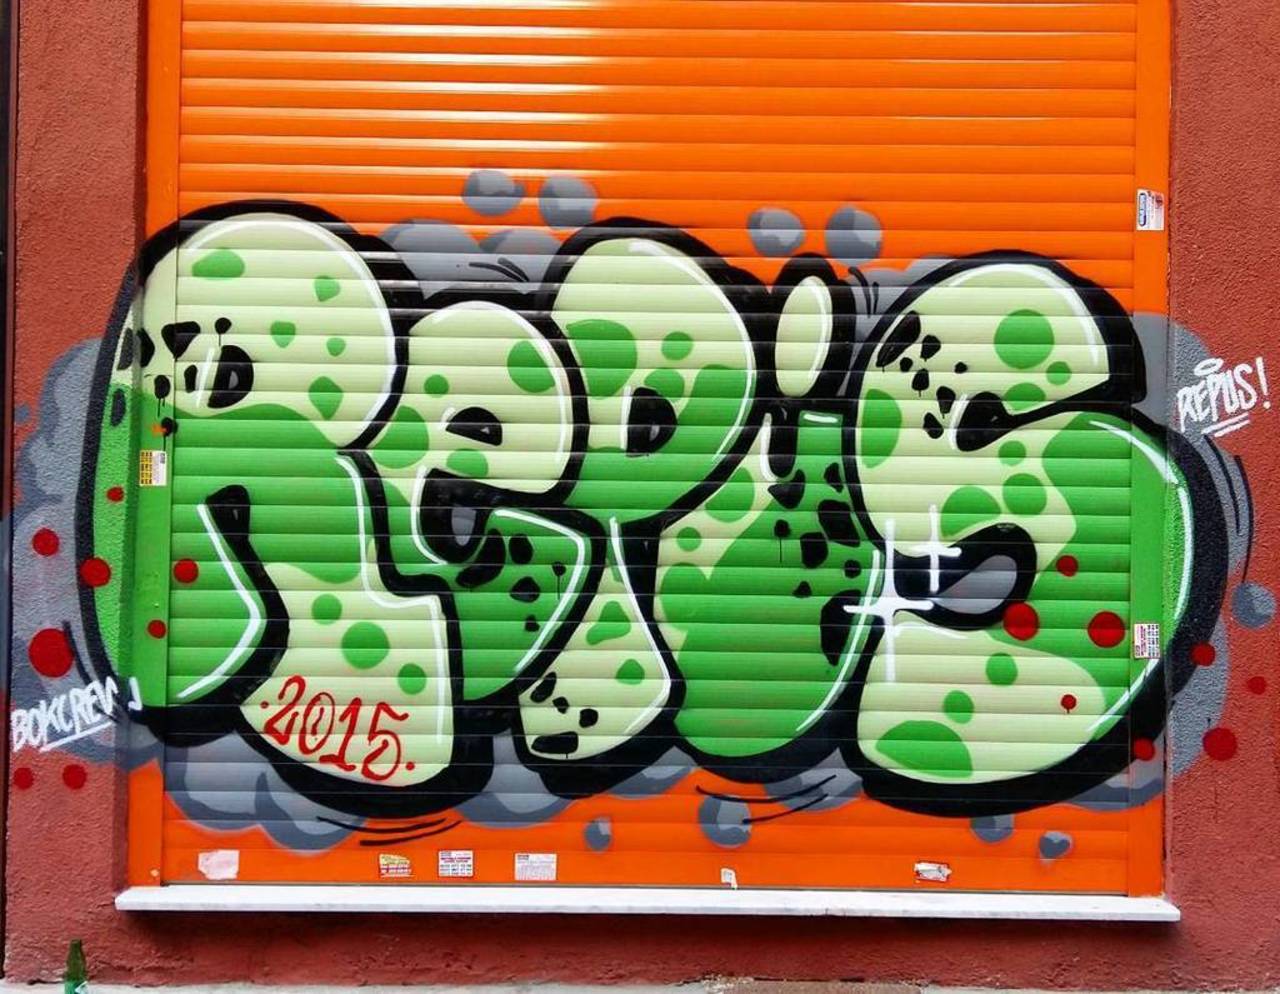 By @repusone @dsb_graff #dsb_graff @rsa_graffiti @streetawesome #streetart #urbanart #graffitiart #graffiti #street… http://t.co/GrpxfEW19V